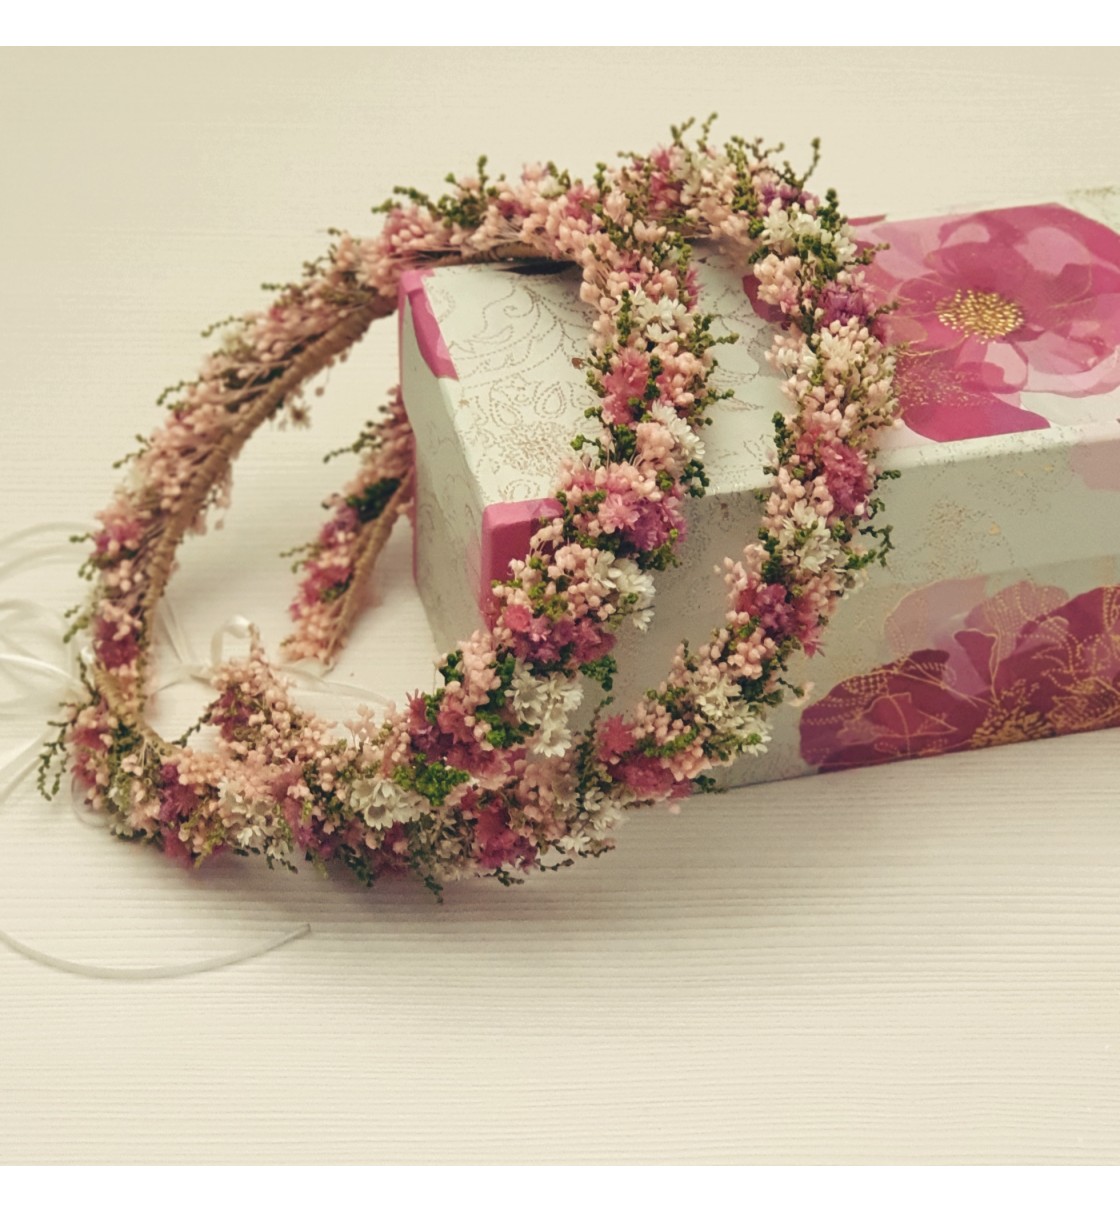 Corona niña de arras o comunión flor preservada rosa, verde y fucsia